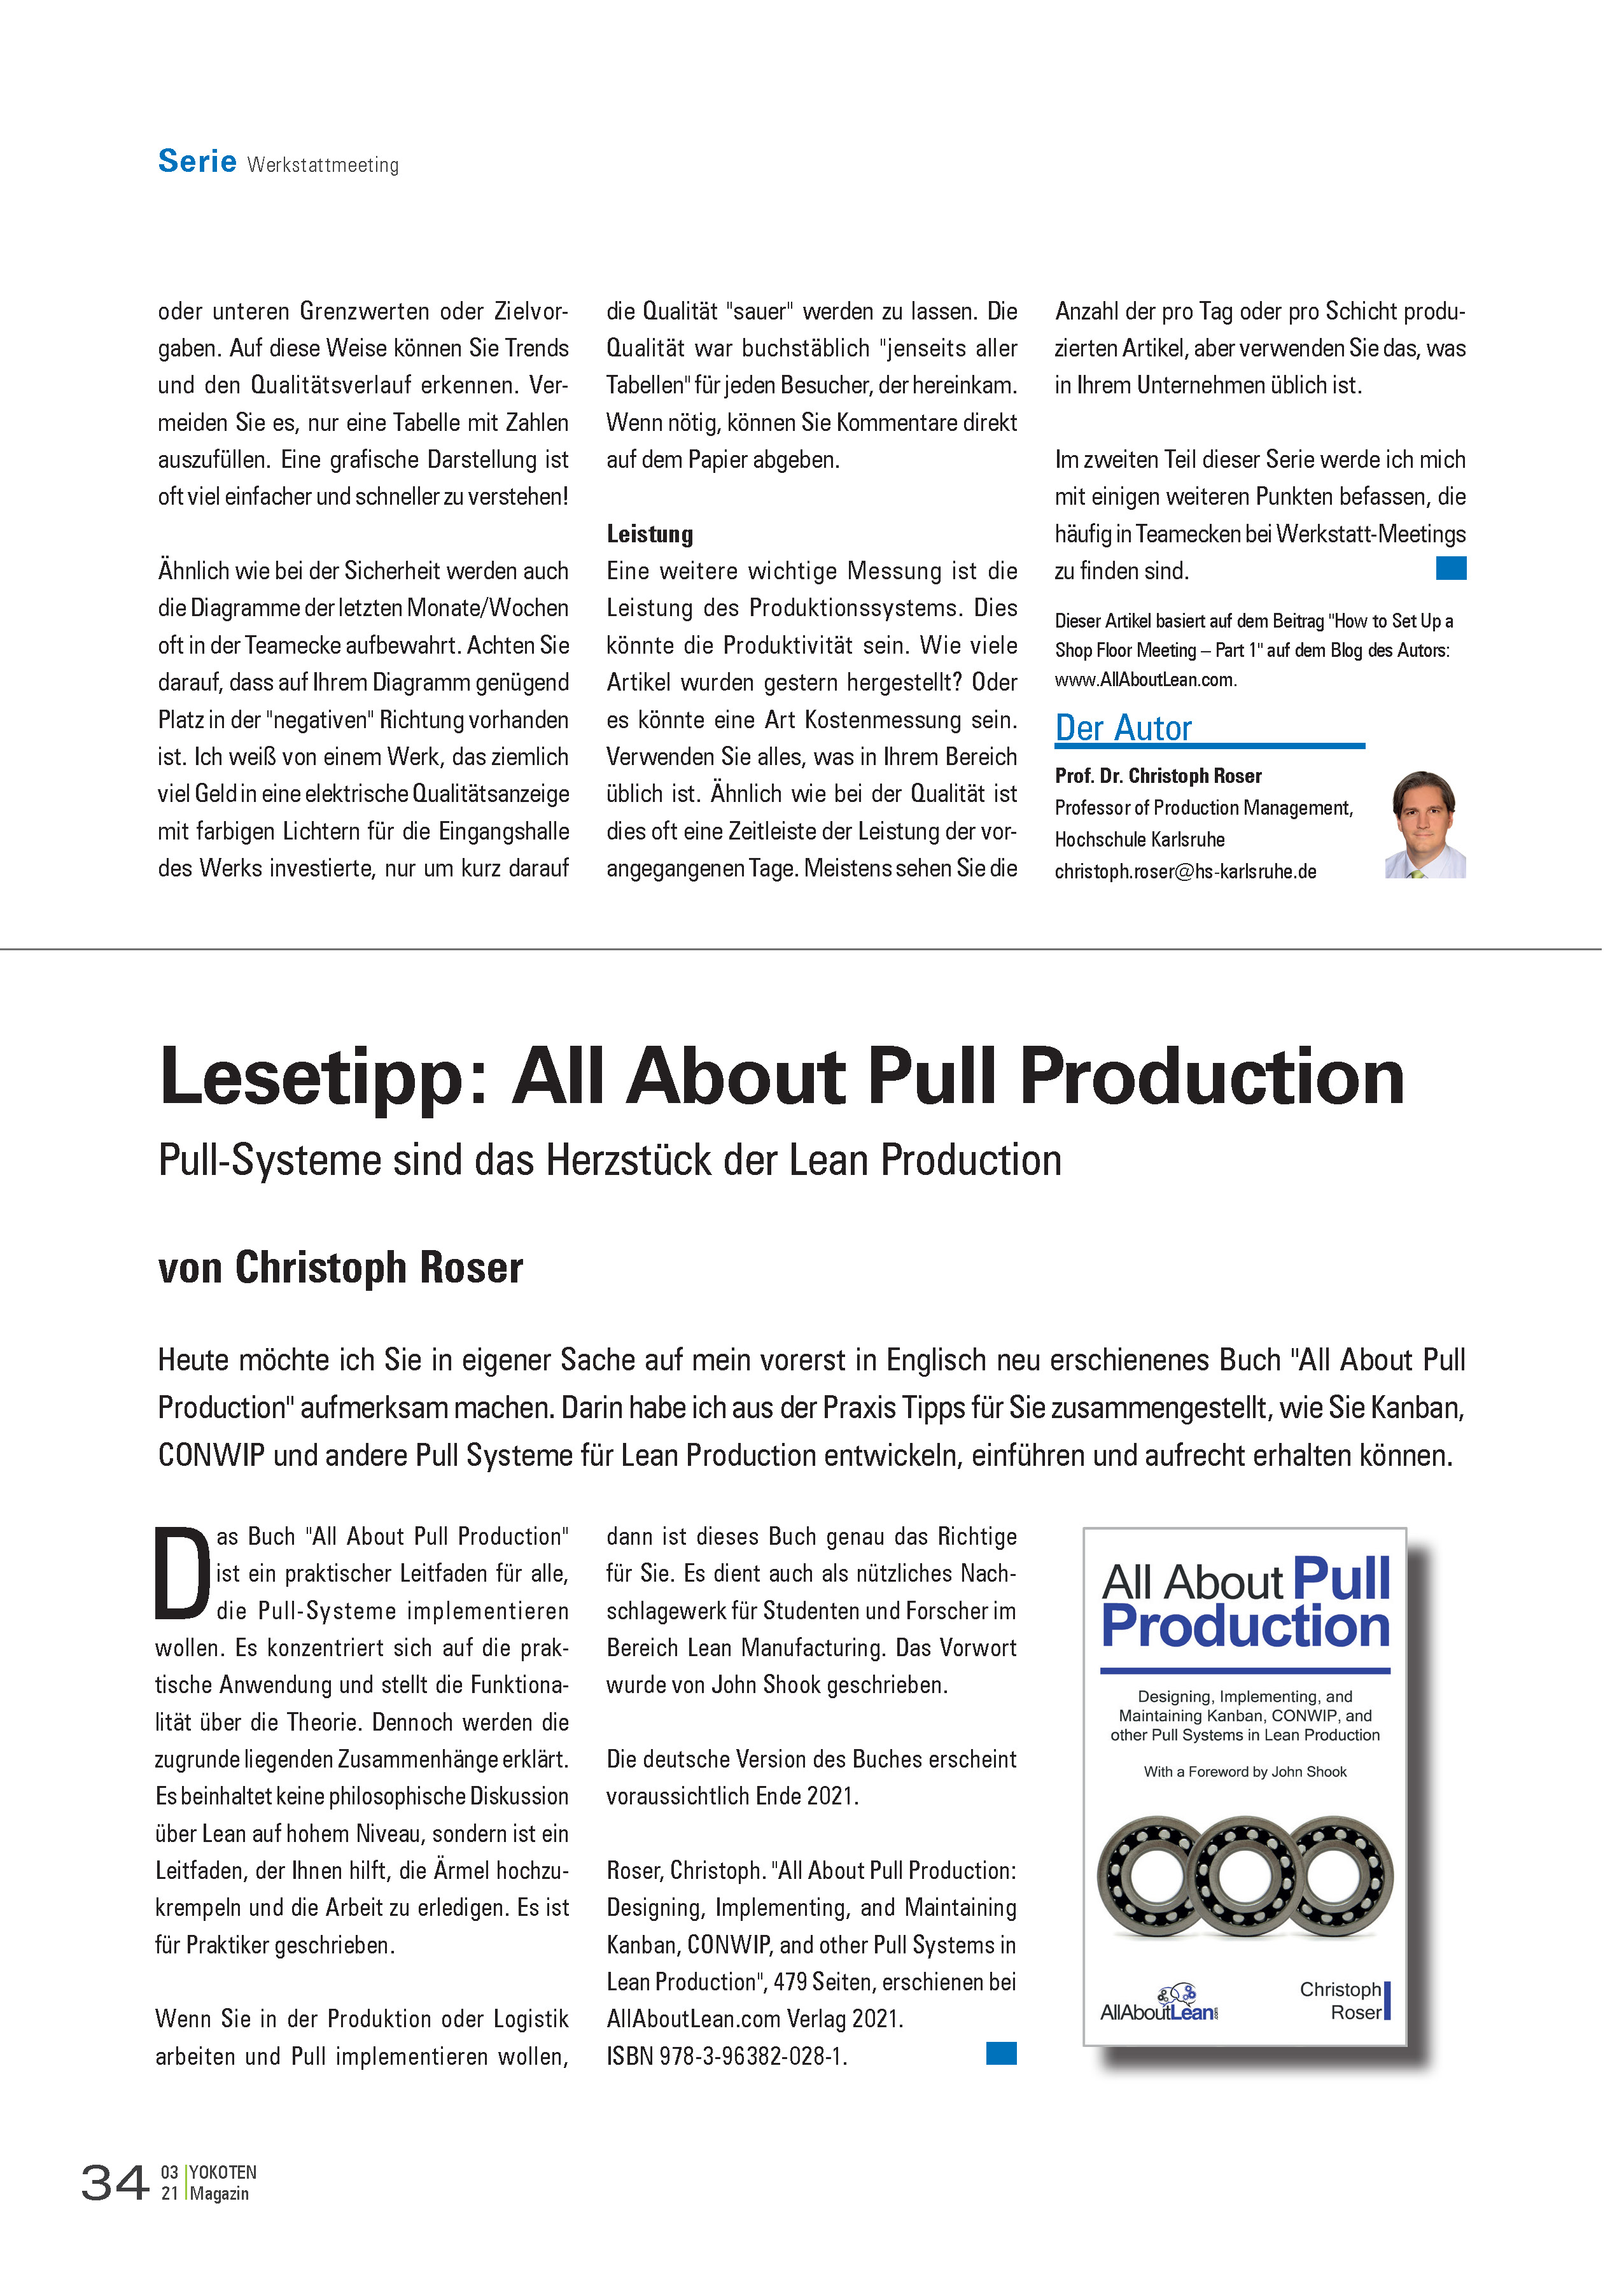 All About Pull Production - Artikel aus Fachmagazin YOKOTEN 2021-03